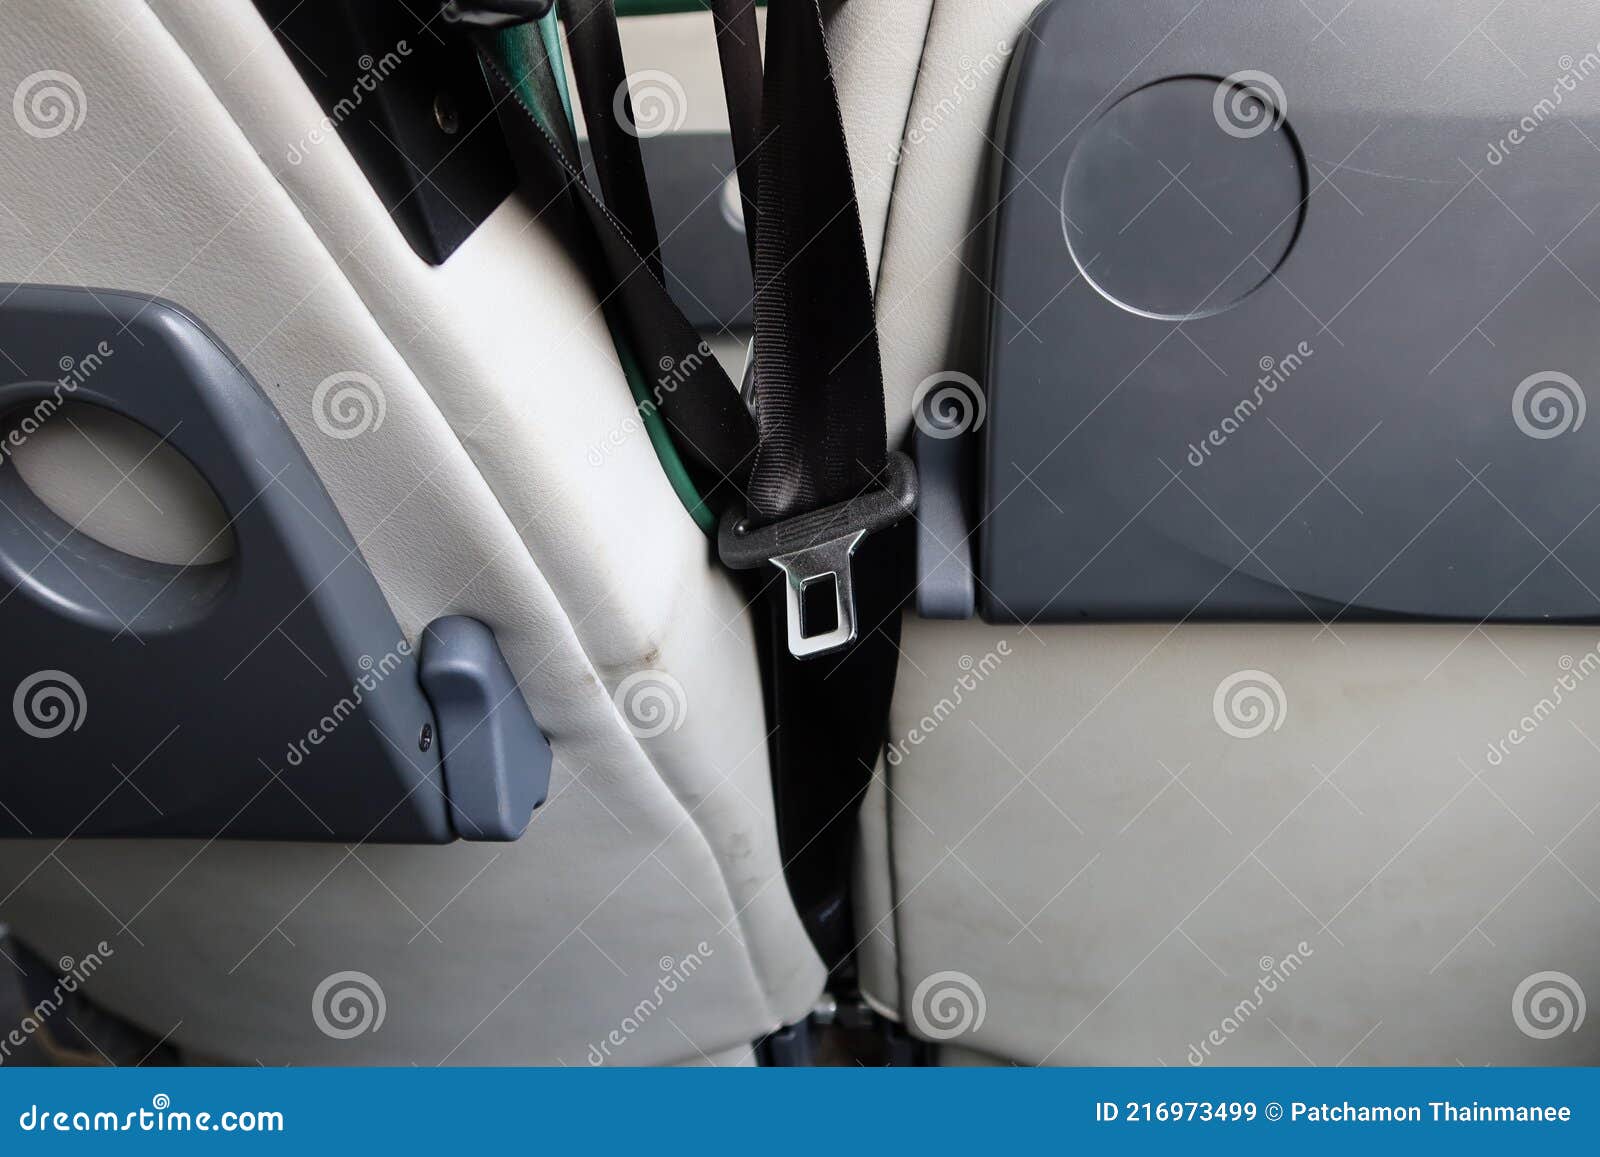 La Surface Du Siège Auto La Vue Arrière a Un Porte-gobelet En Plastique à  L'intérieur Du Bus. Image stock - Image du véhicule, plastique: 216973499